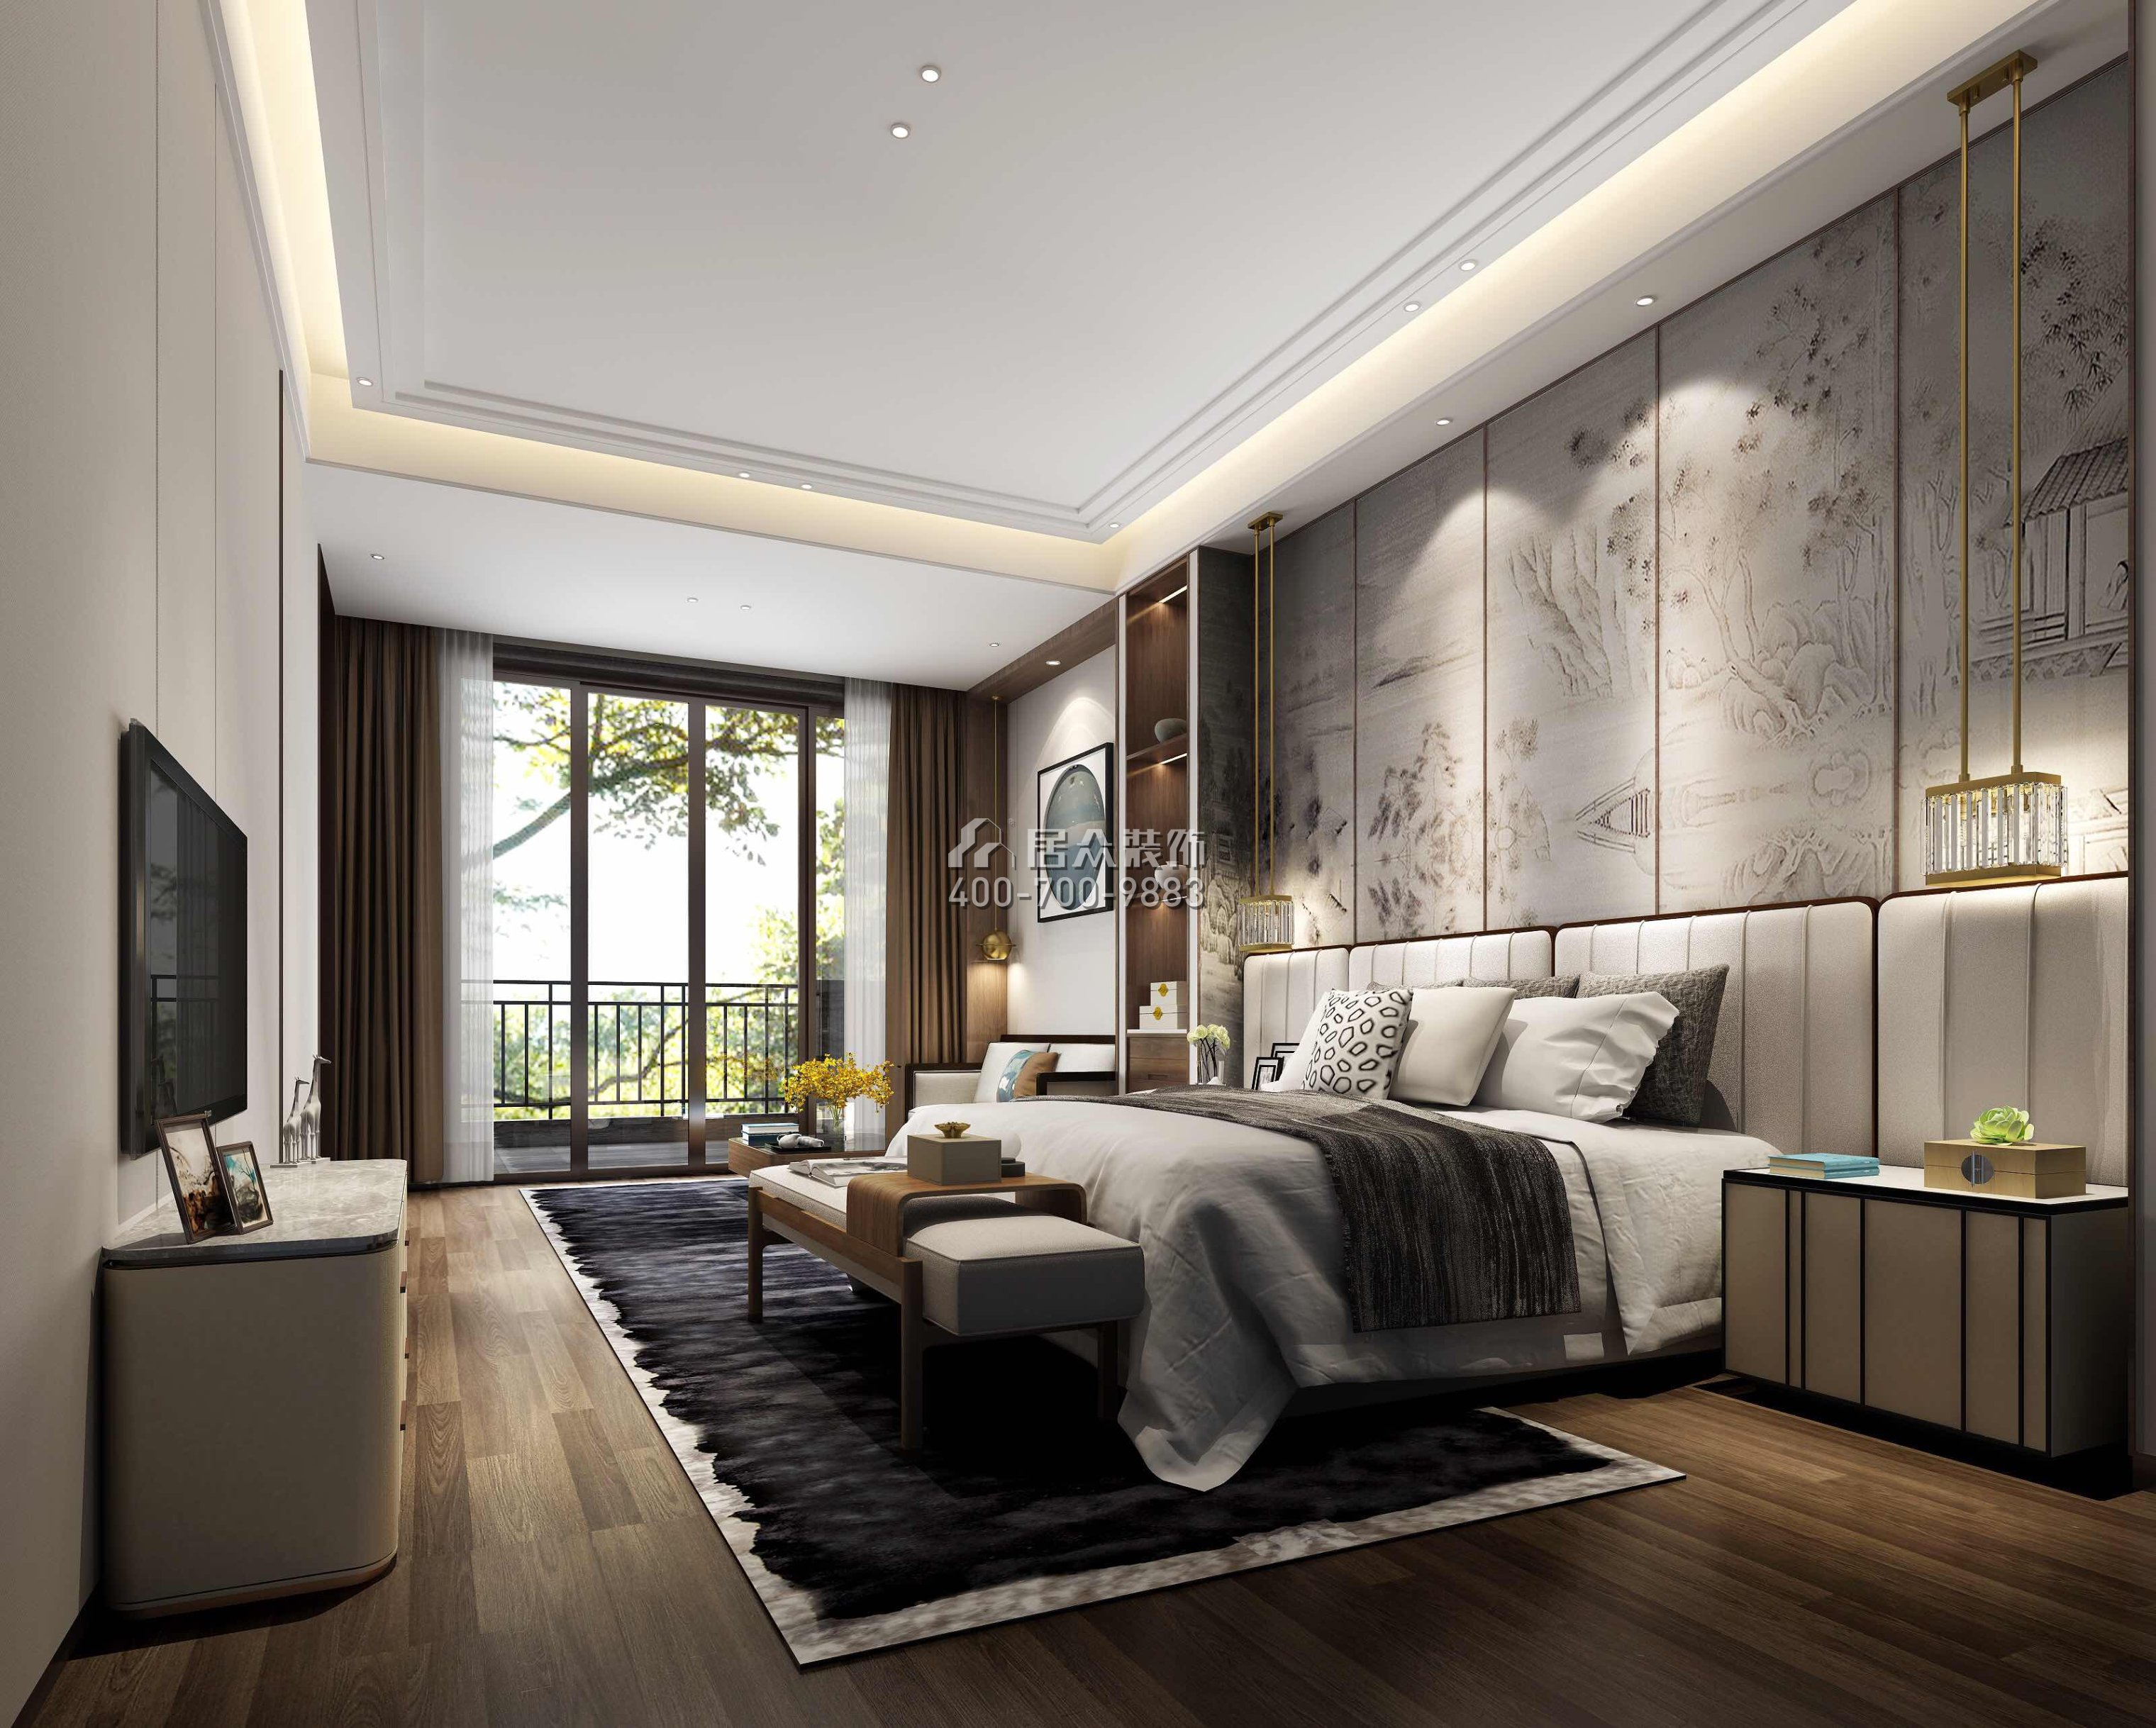 新世纪颐龙湾1000平方米中式风格别墅户型卧室装修效果图